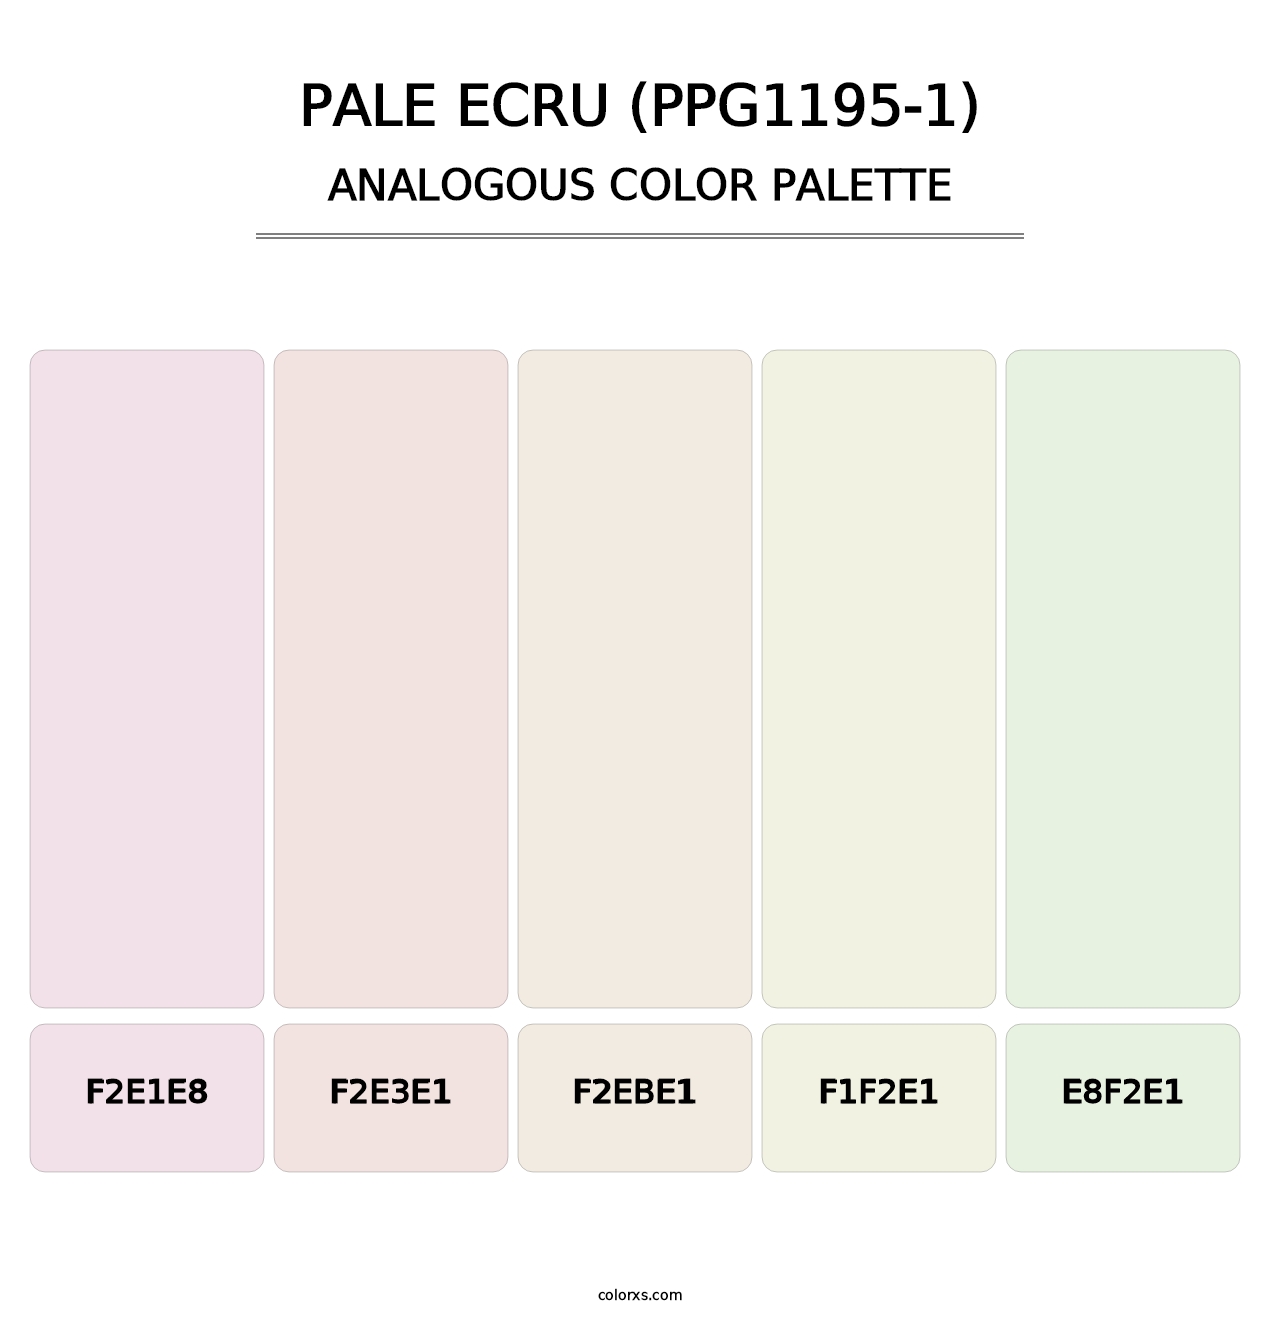 Pale Ecru (PPG1195-1) - Analogous Color Palette